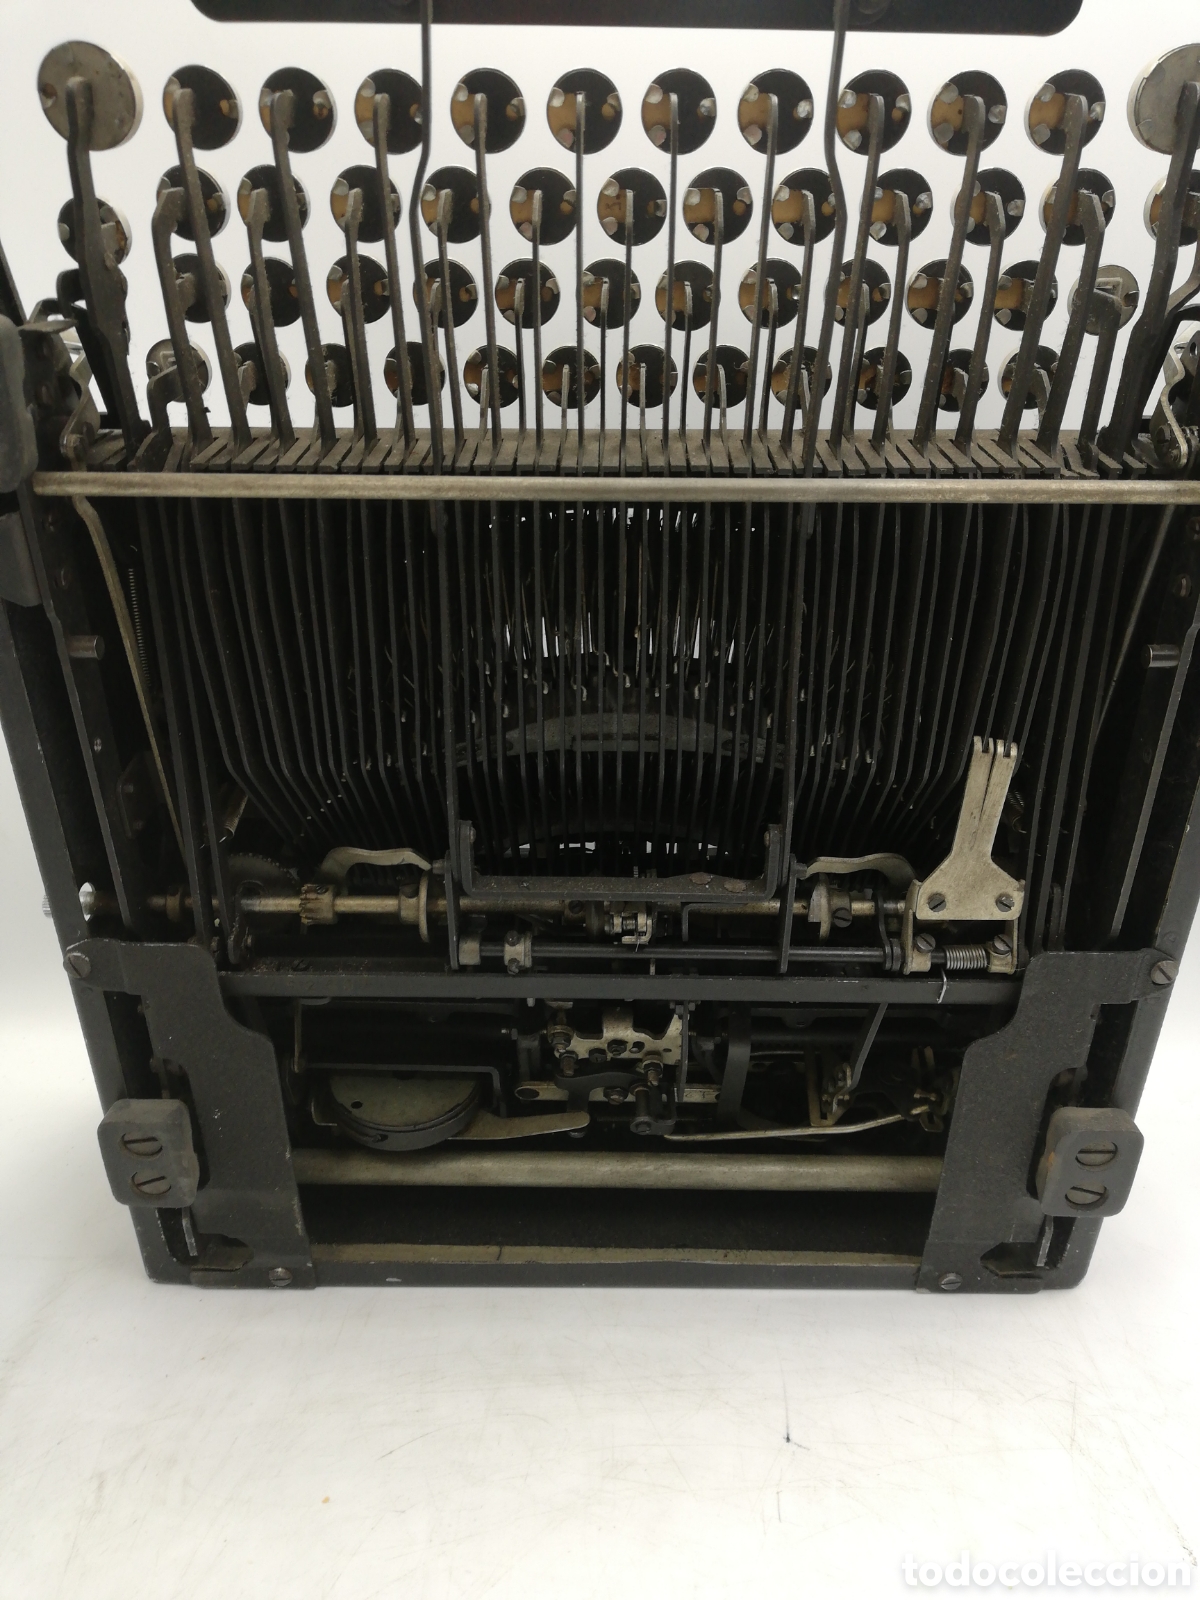 Máquina vintag de escribir de Olivetti Studio 46 con teclado español.